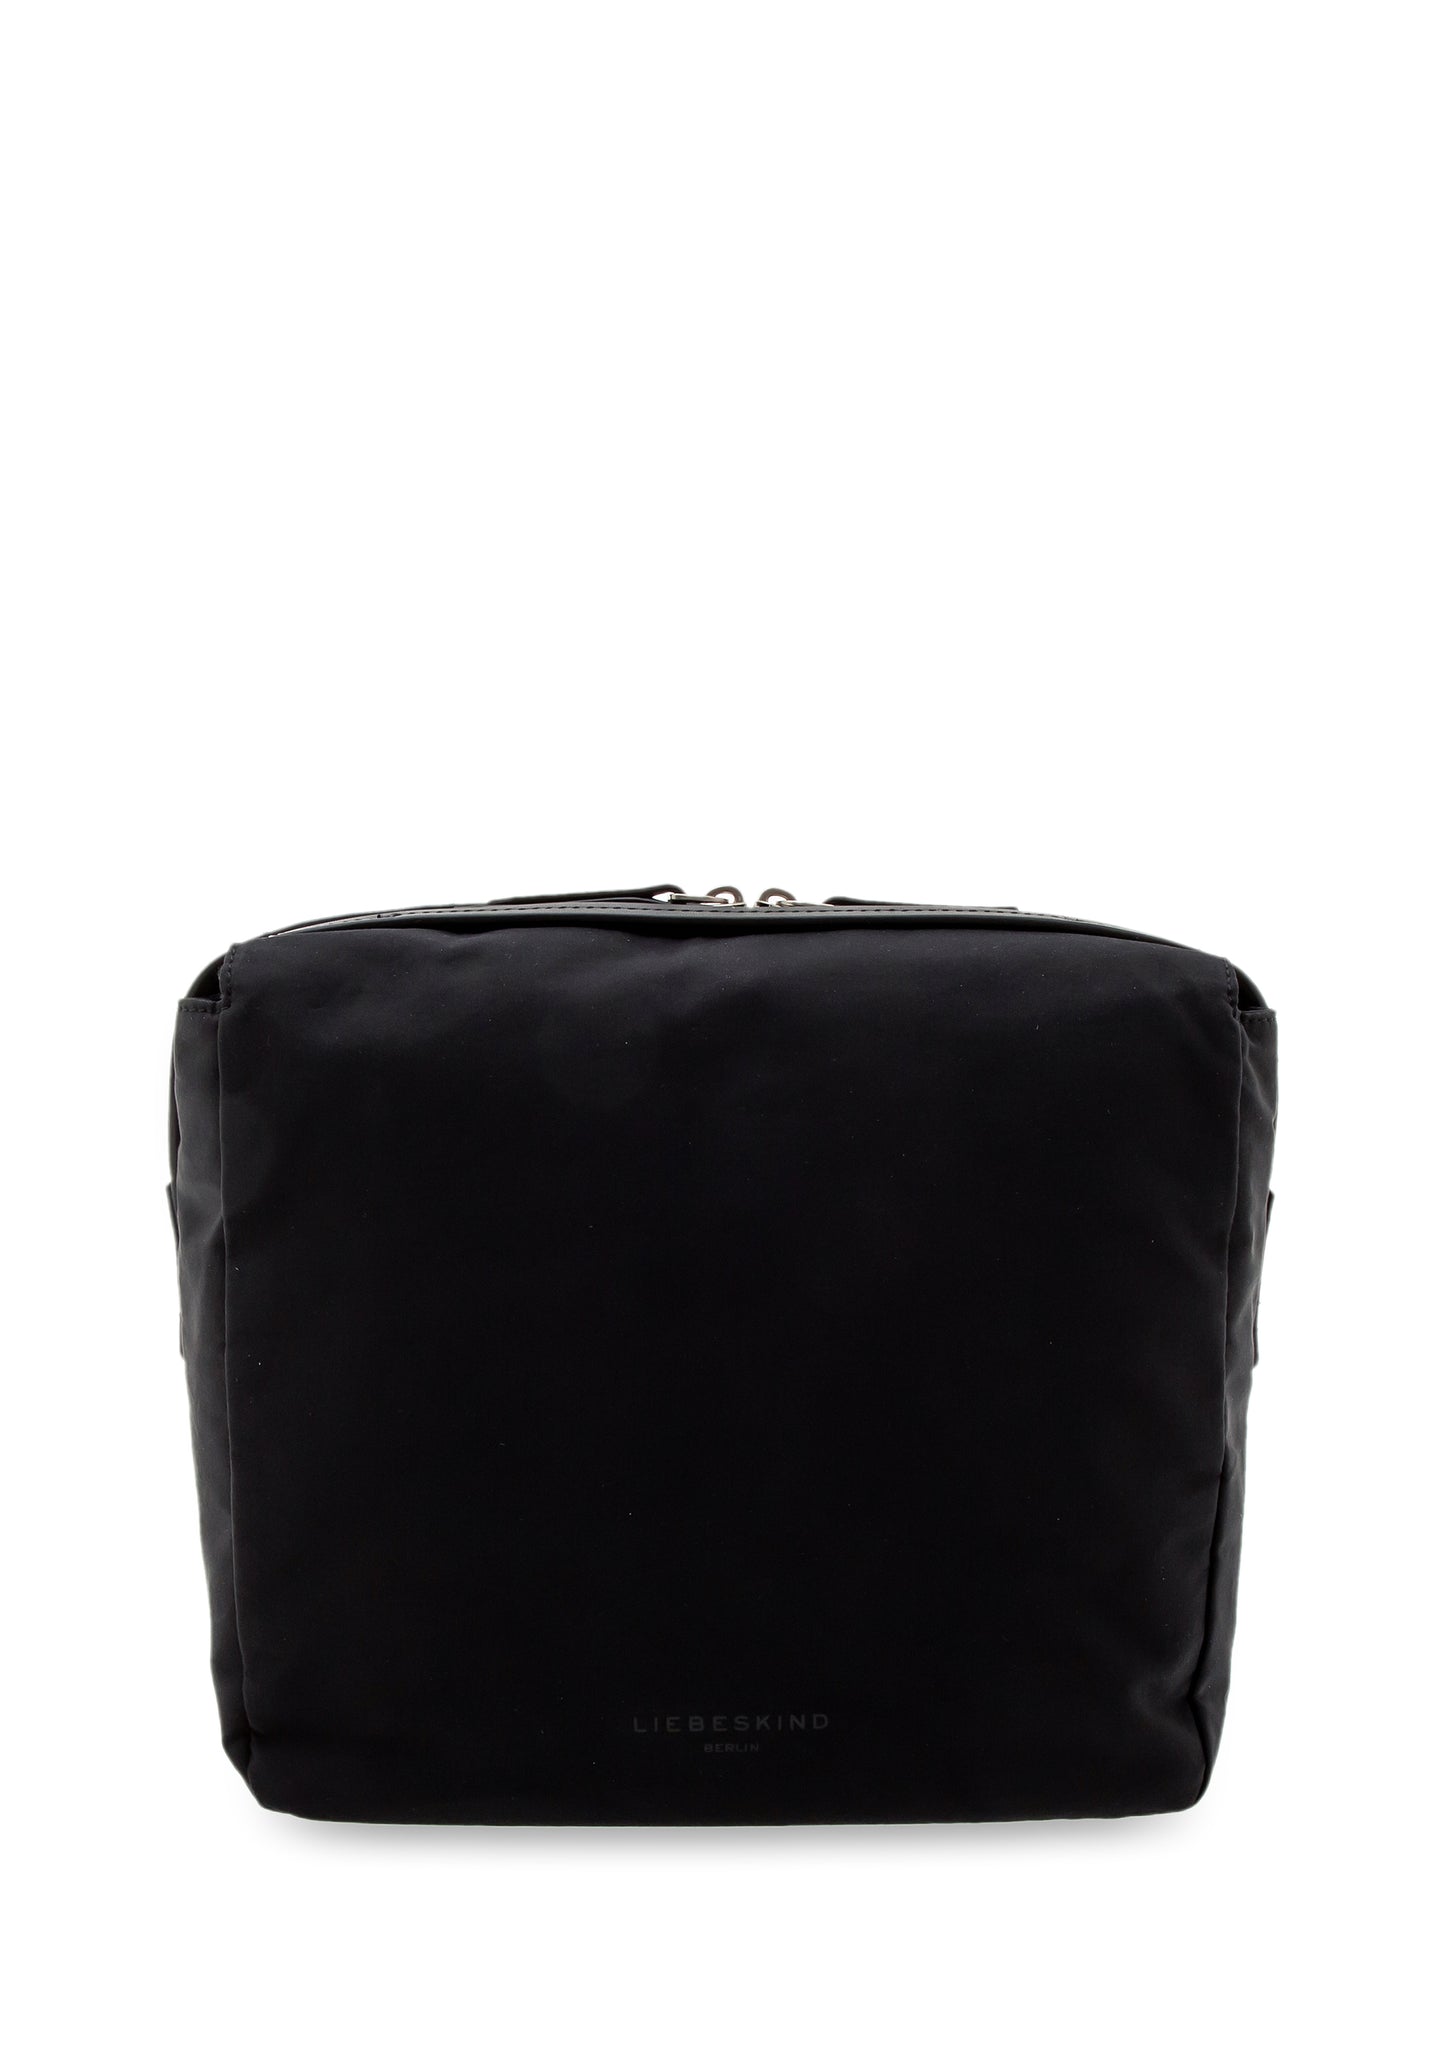 Lilly Switch Bag black | Bildmaterial bereitgestellt von SHOES.PLEASE.